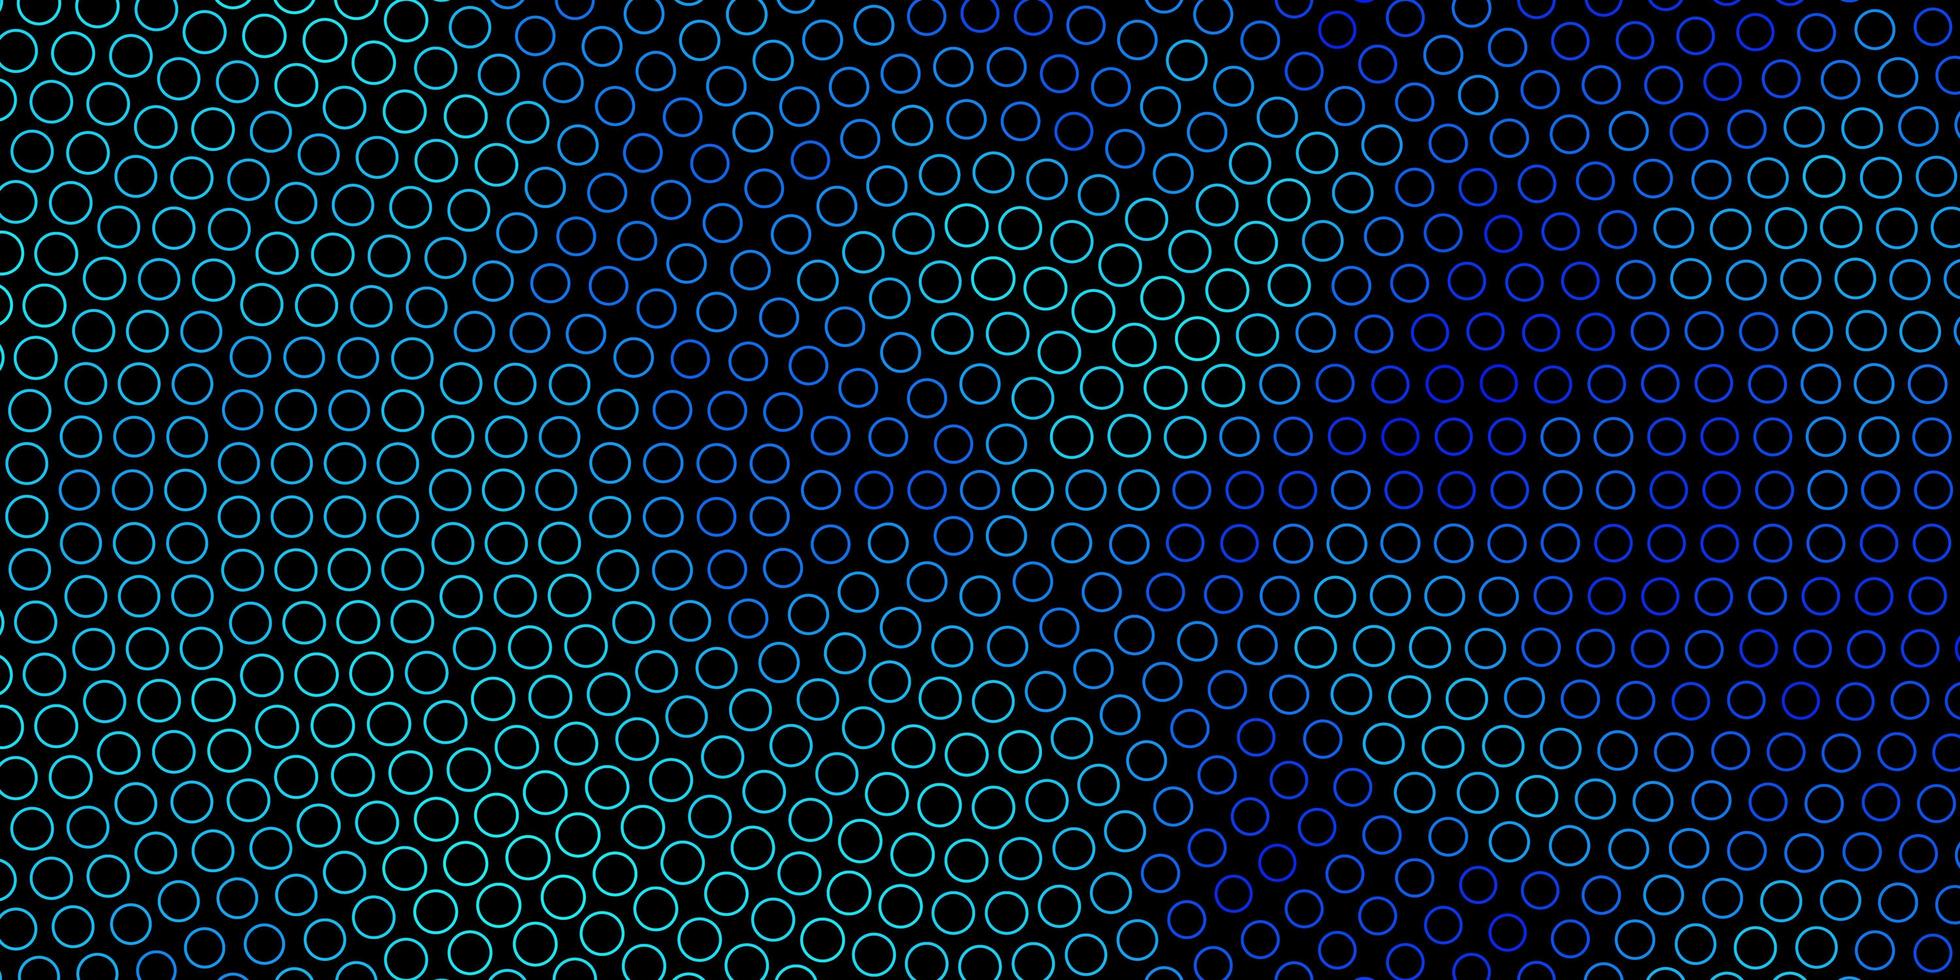 struttura vettoriale blu scuro con cerchi.